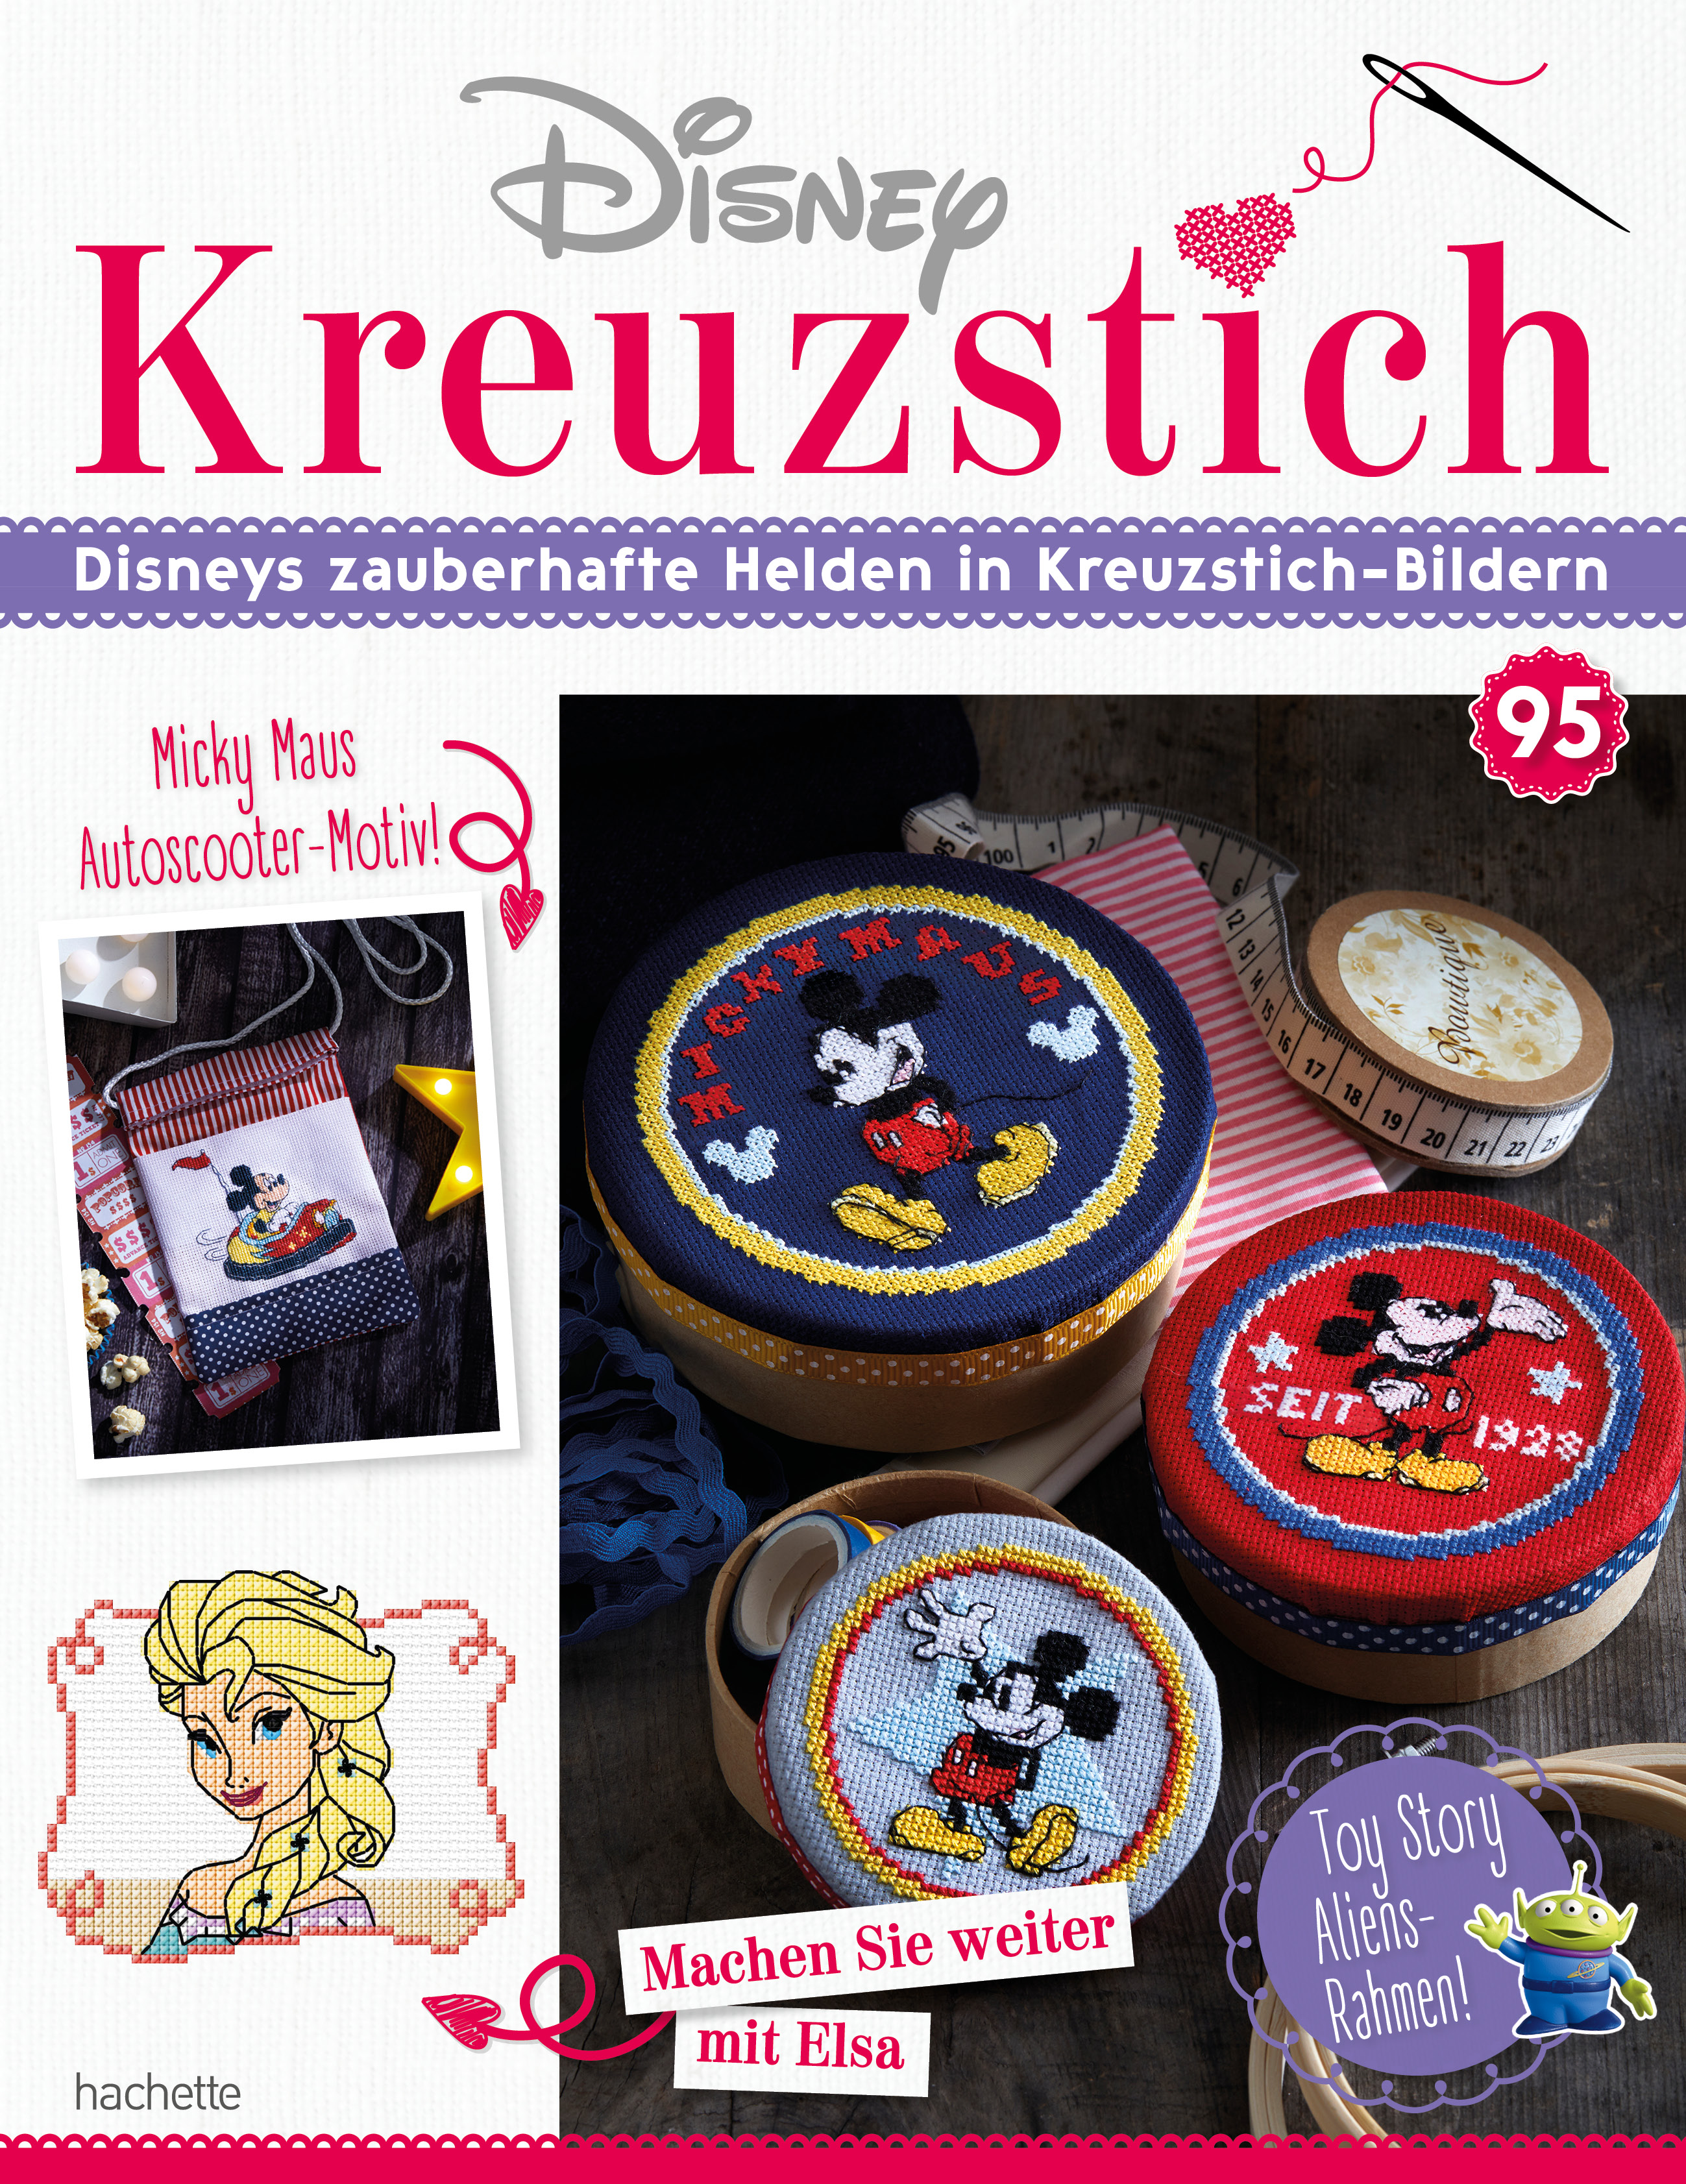 Disney Kreuzstich – Ausgabe 095